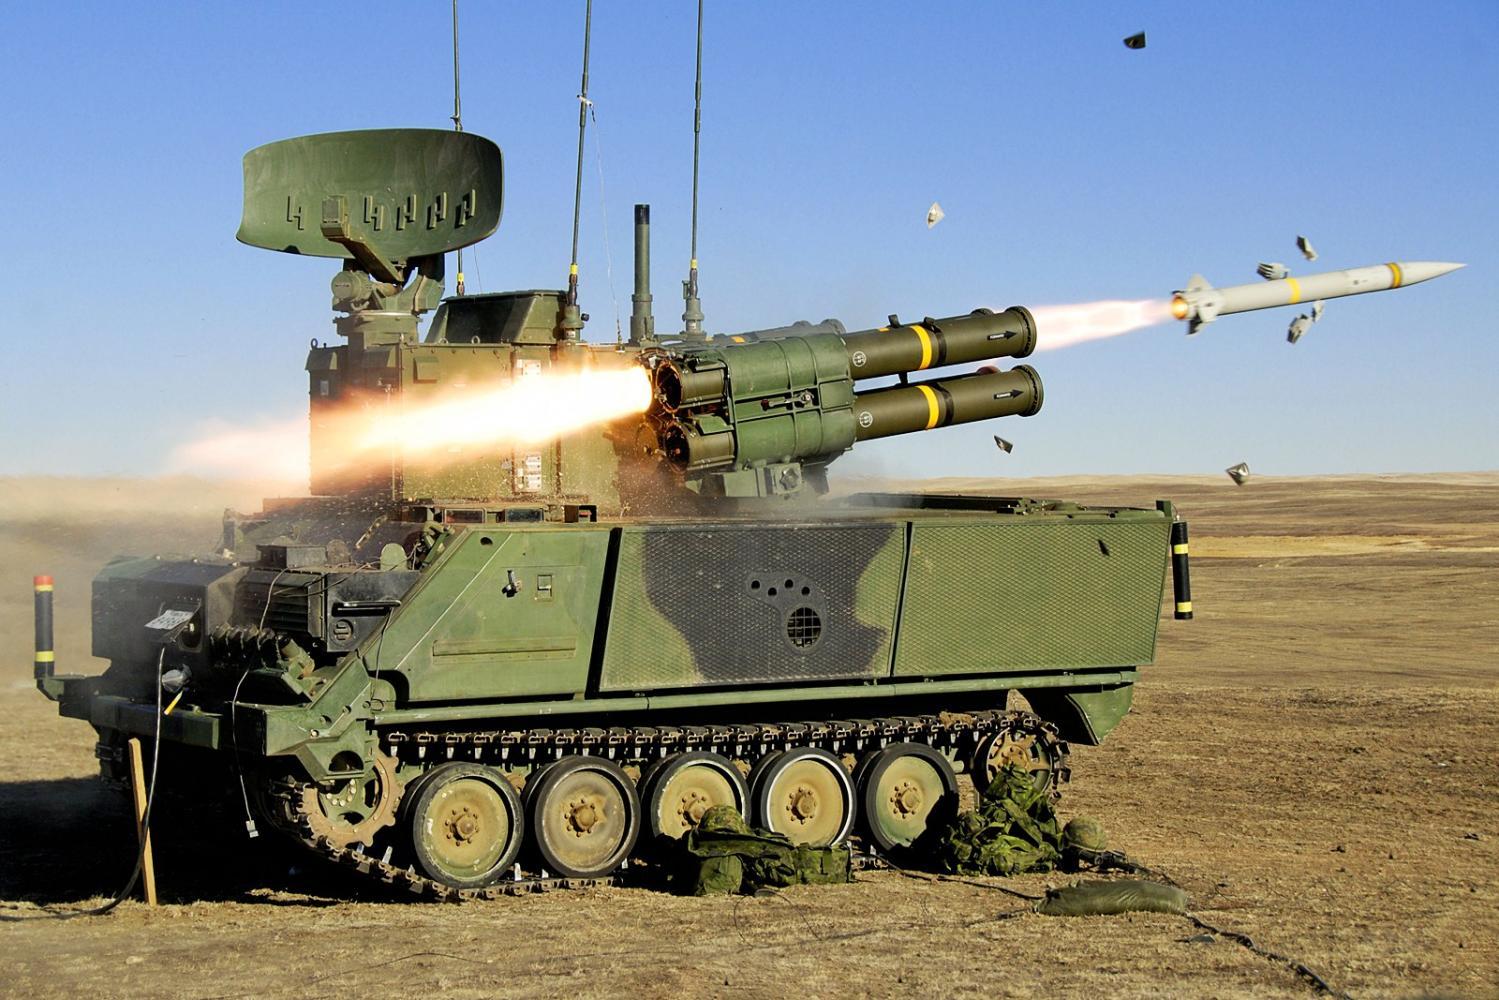 阿达茨导弹飞行速度比普遍是亚音速的反坦克导弹快得多,可达3马赫